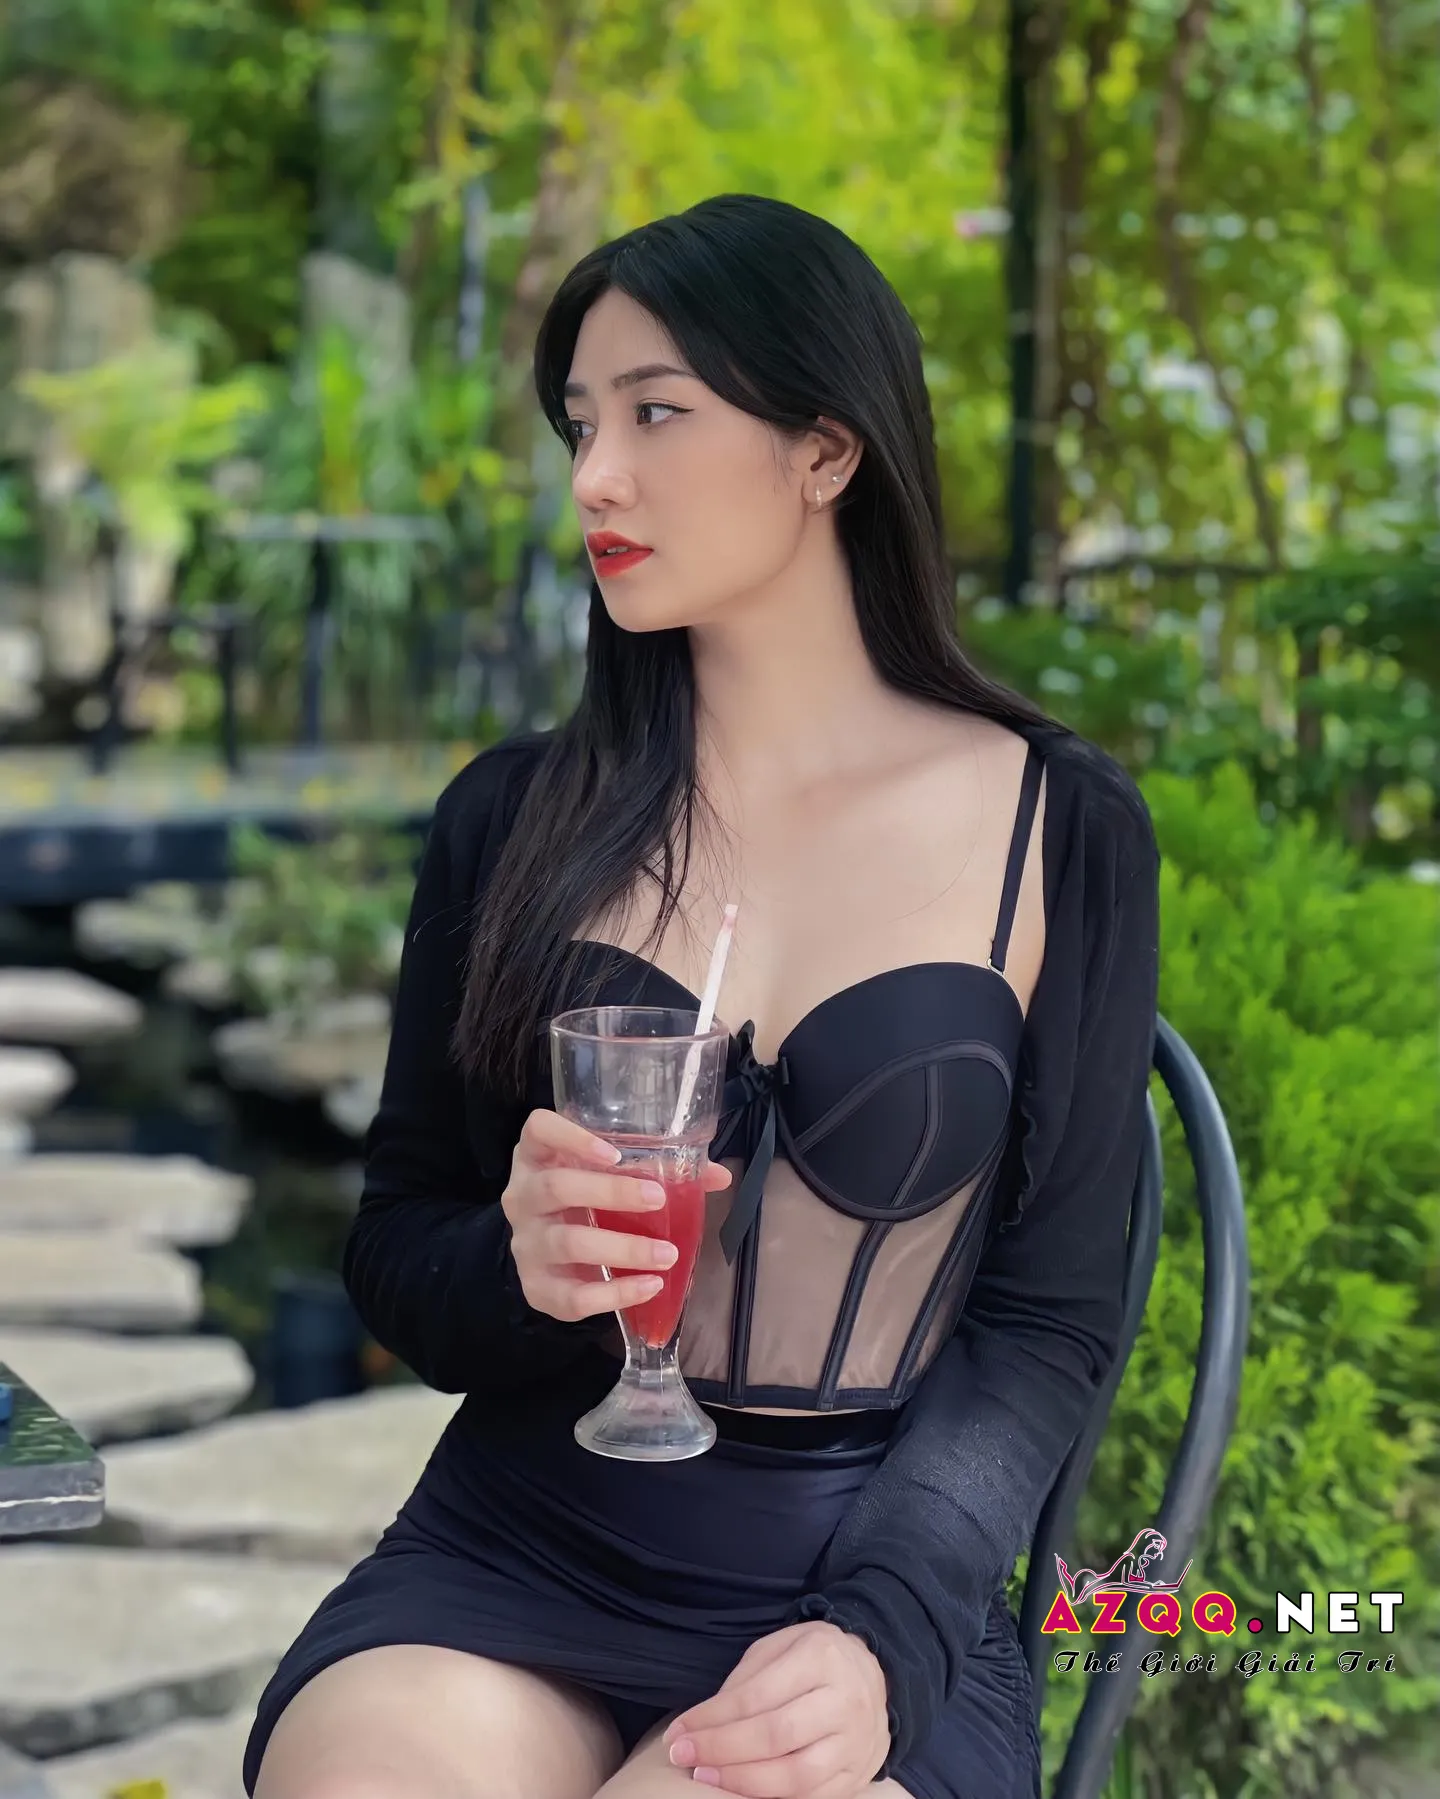 Đỗ Thúy Quỳnh mặc váy đen trong xuốt lộ thân hình nóng bỏng